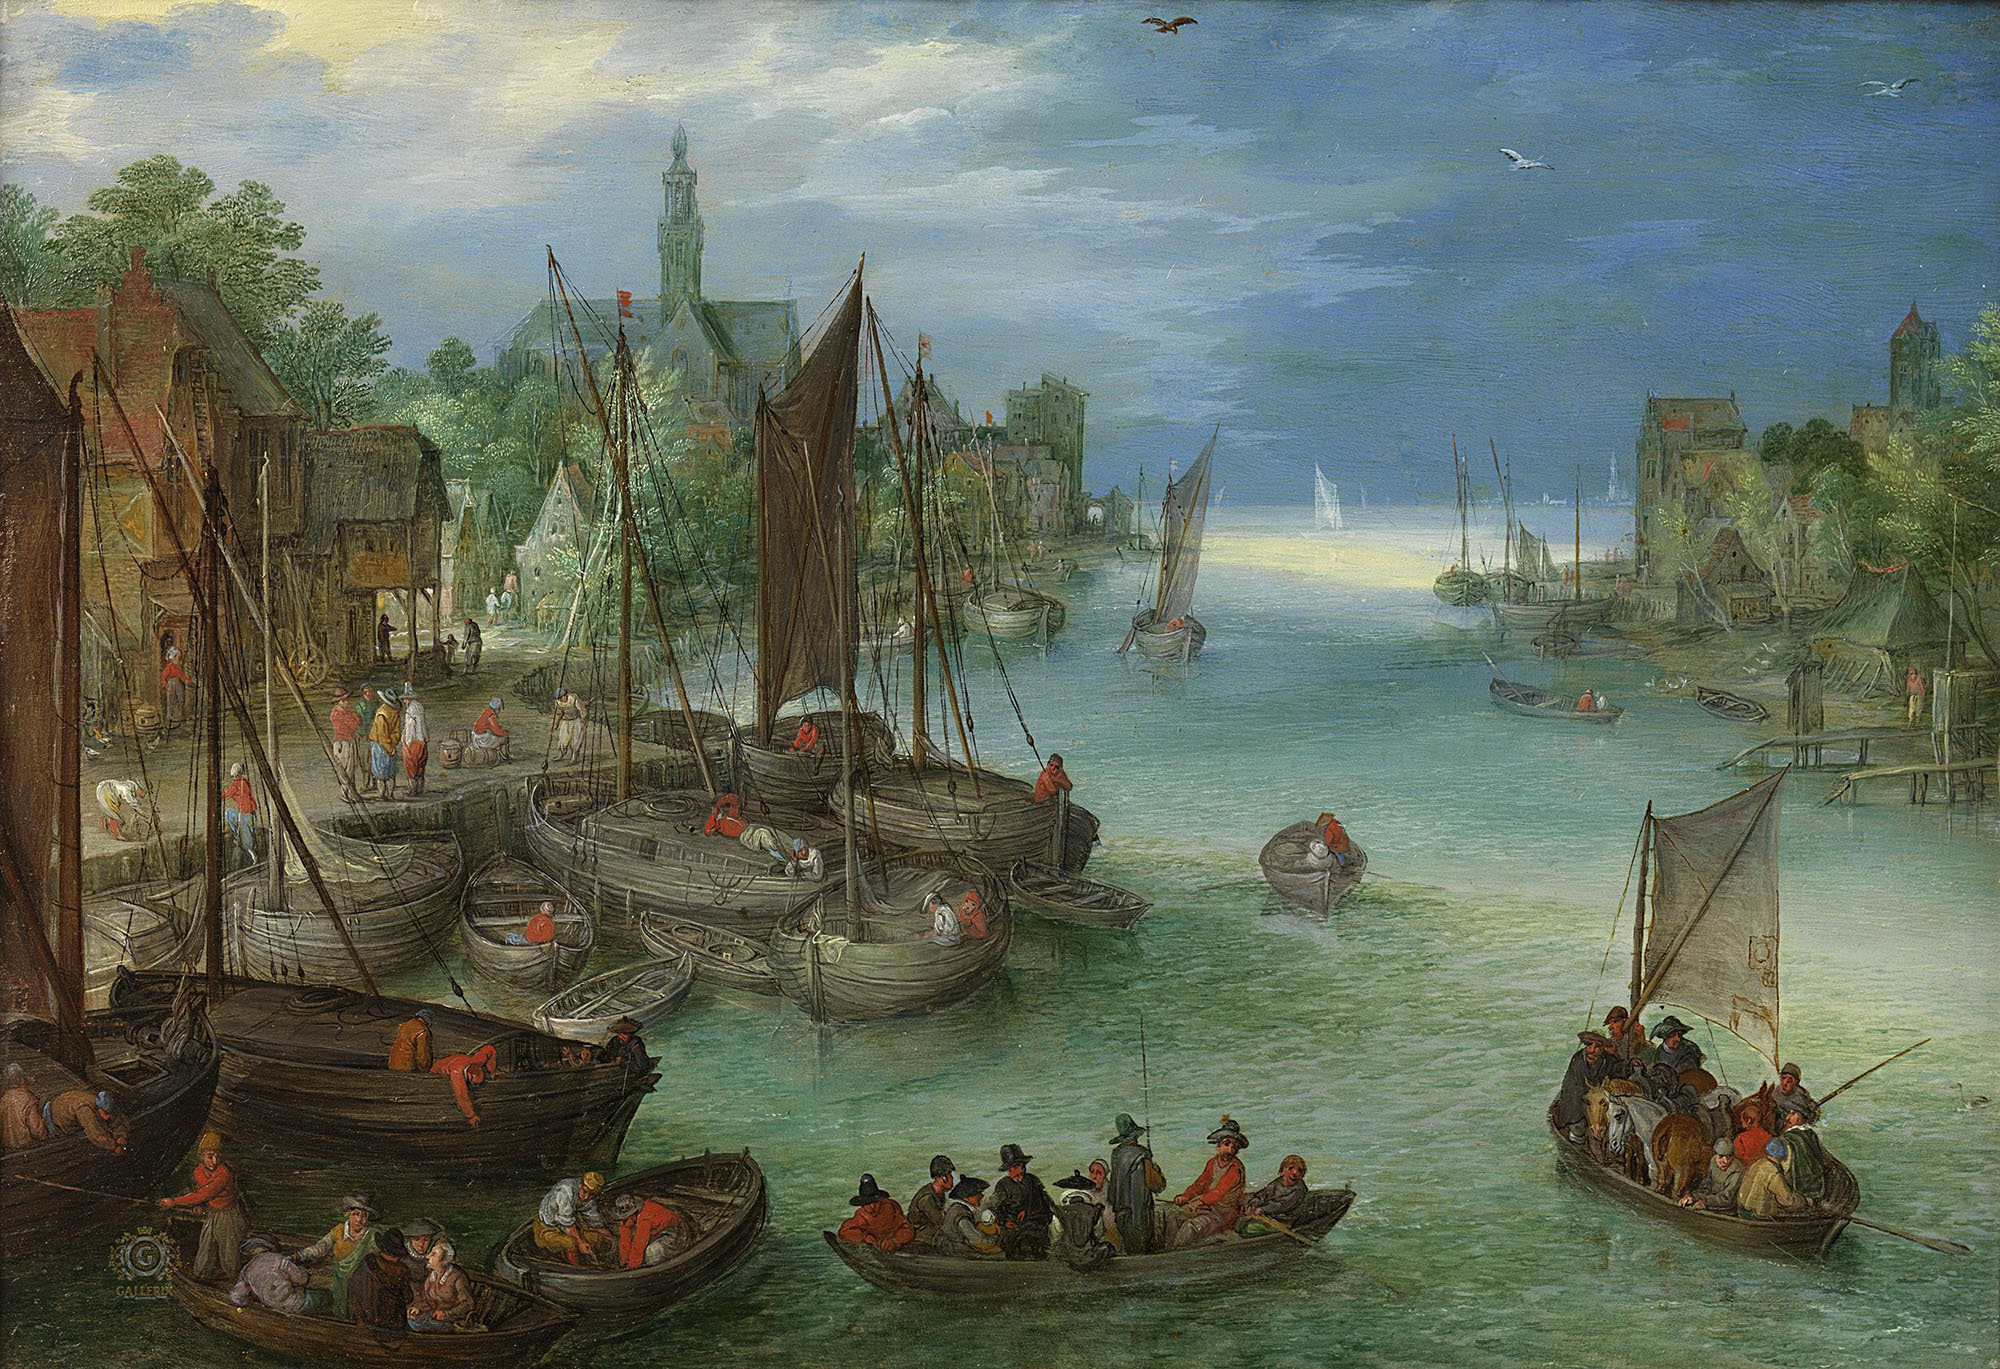 Ян Брейгель Старший (атр.). "Пейзаж с видом на город вдоль реки". 1630. Государственный музей, Амстердам.